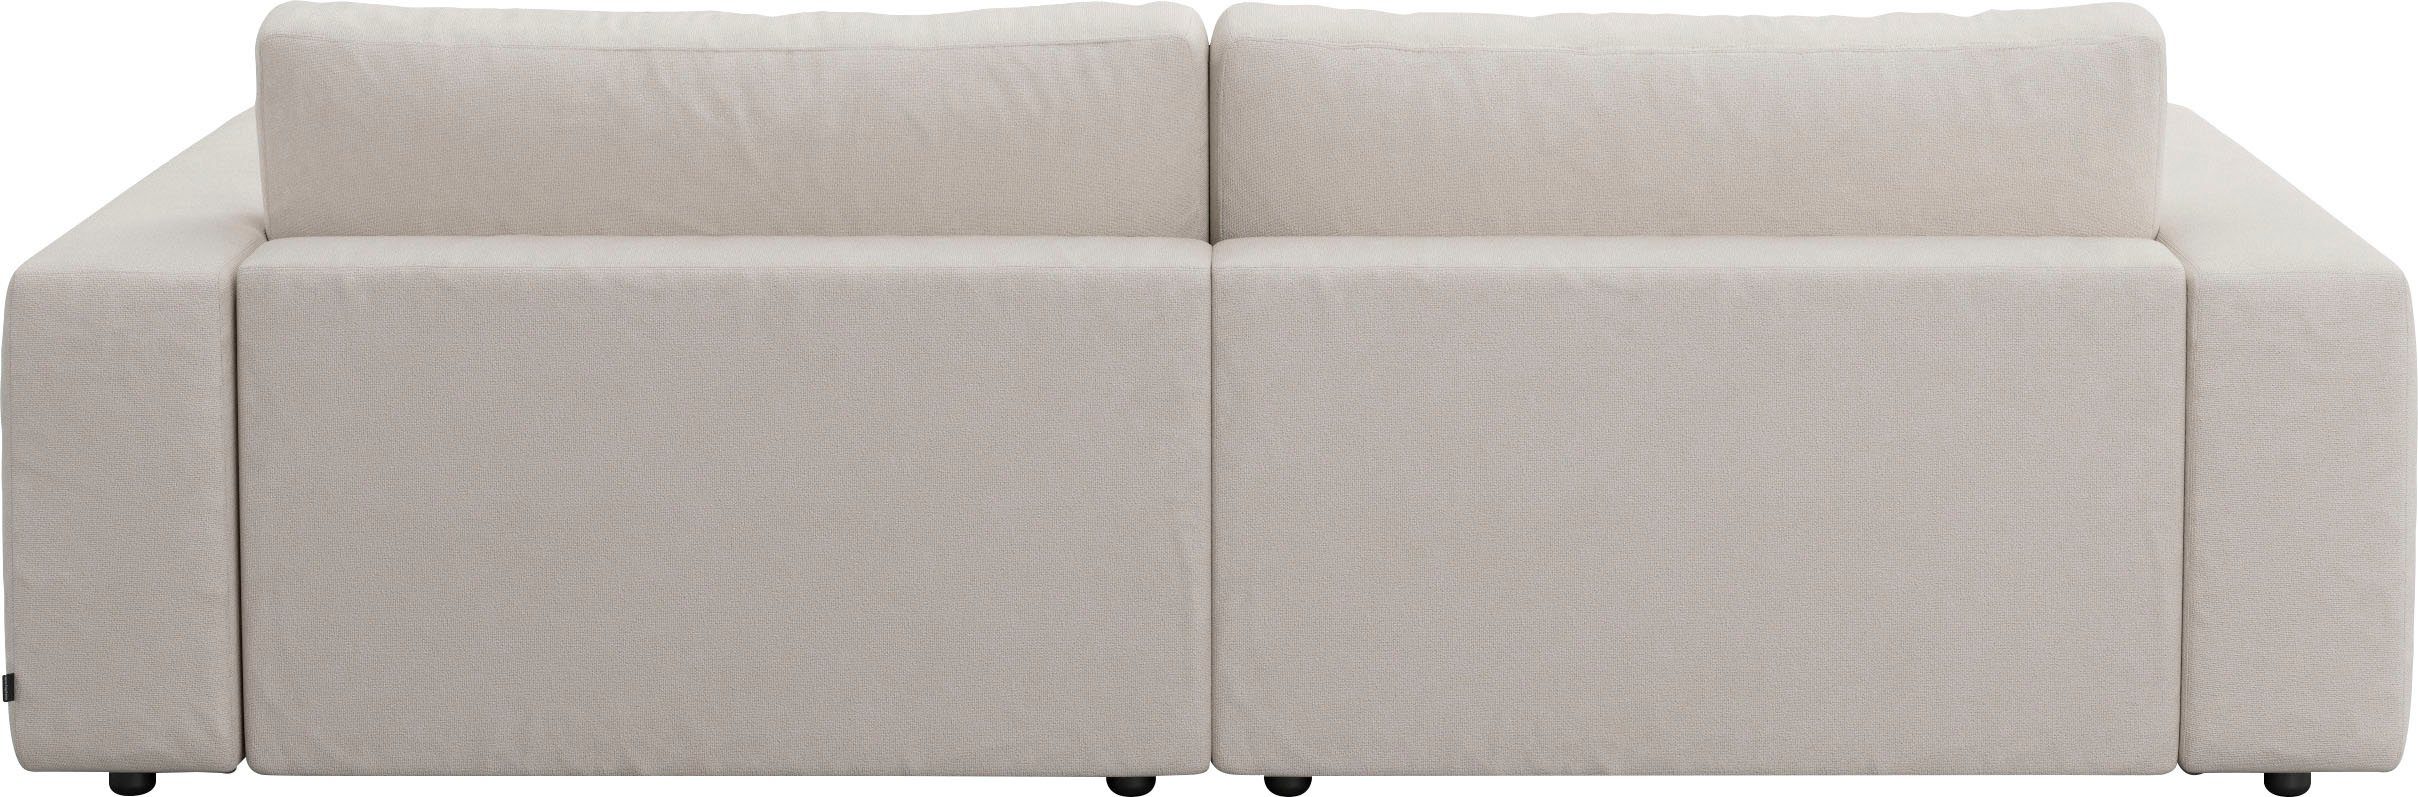 LUCIA, unterschiedlichen GALLERY 4 und branded M Qualitäten in Big-Sofa by Musterring 2,5-Sitzer Nähten, vielen